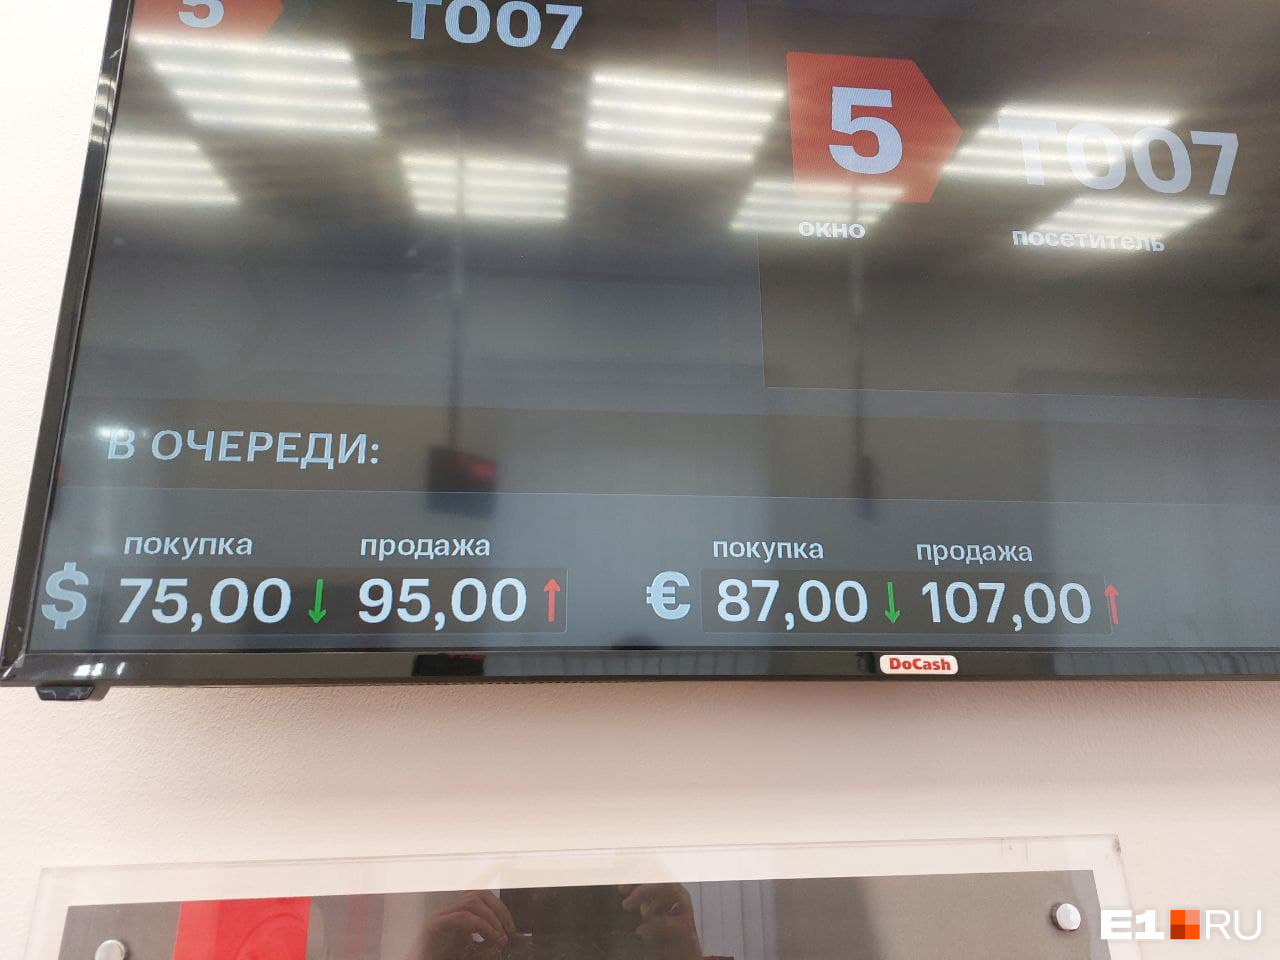 А МТС Банке евро можно купить по 107 рублей